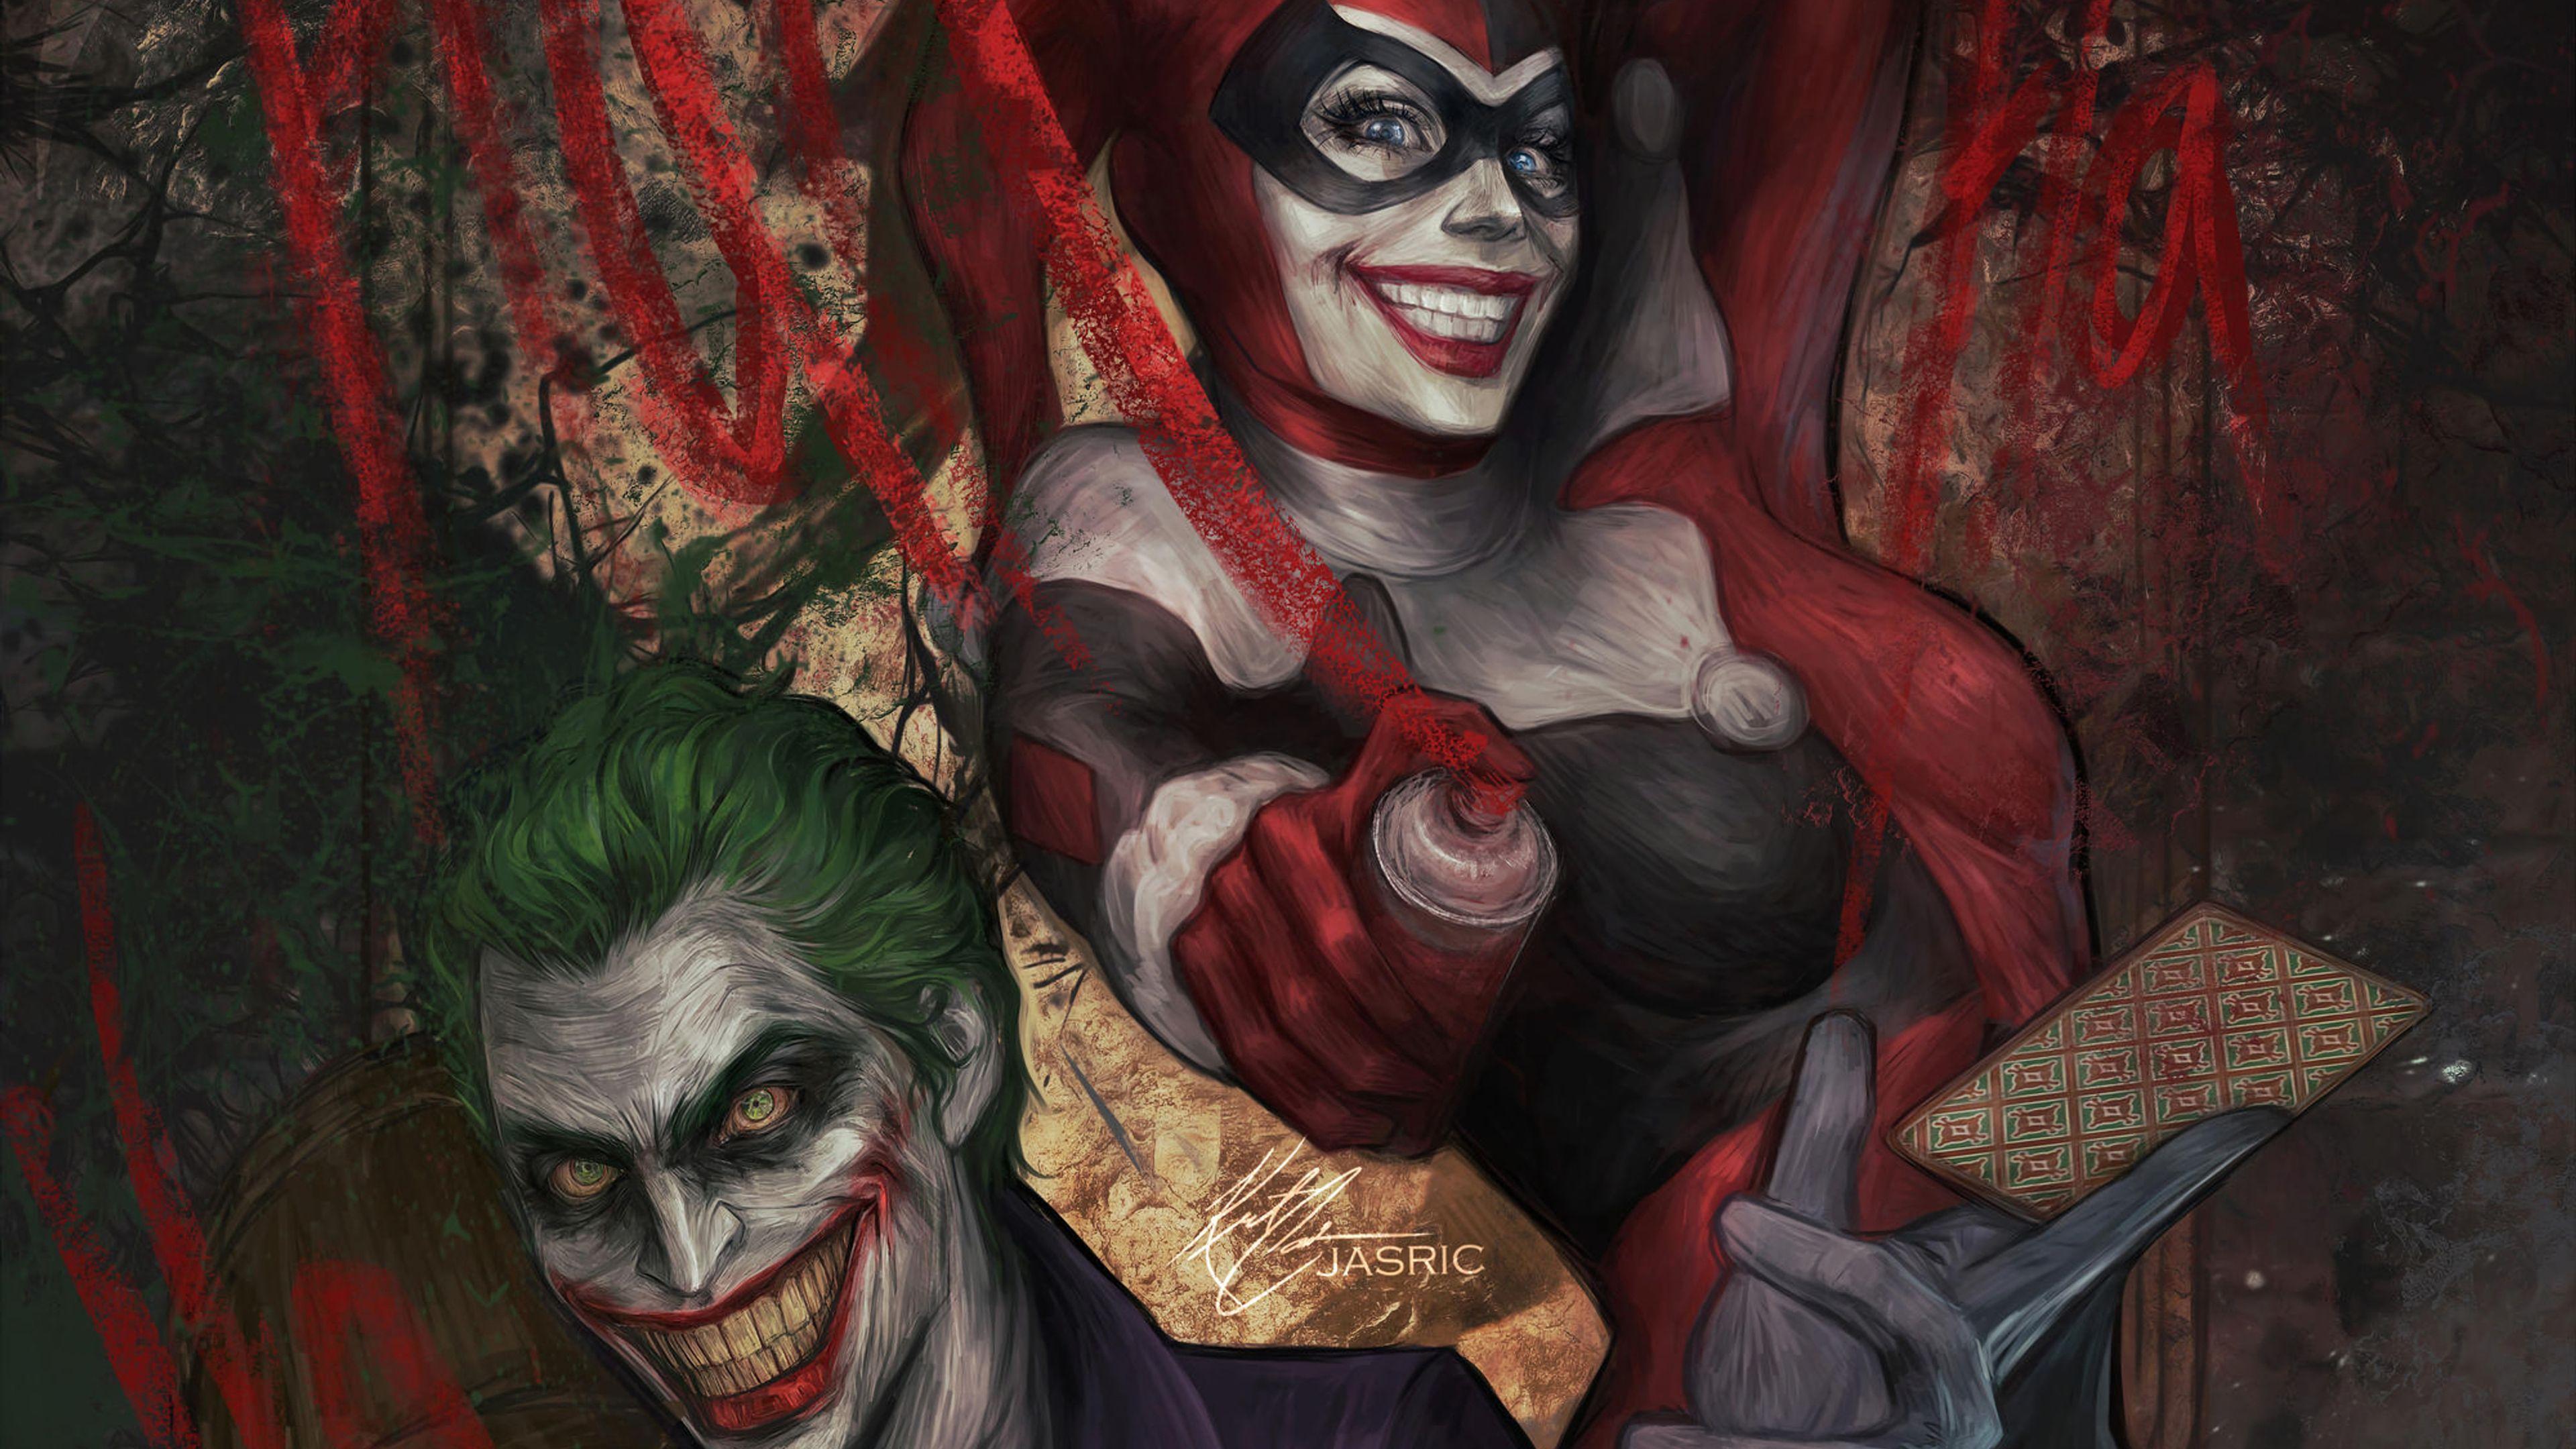 3840 x 2160 · jpeg - Joker Harley Quinn 4k Wallpapers - Wallpaper Cave